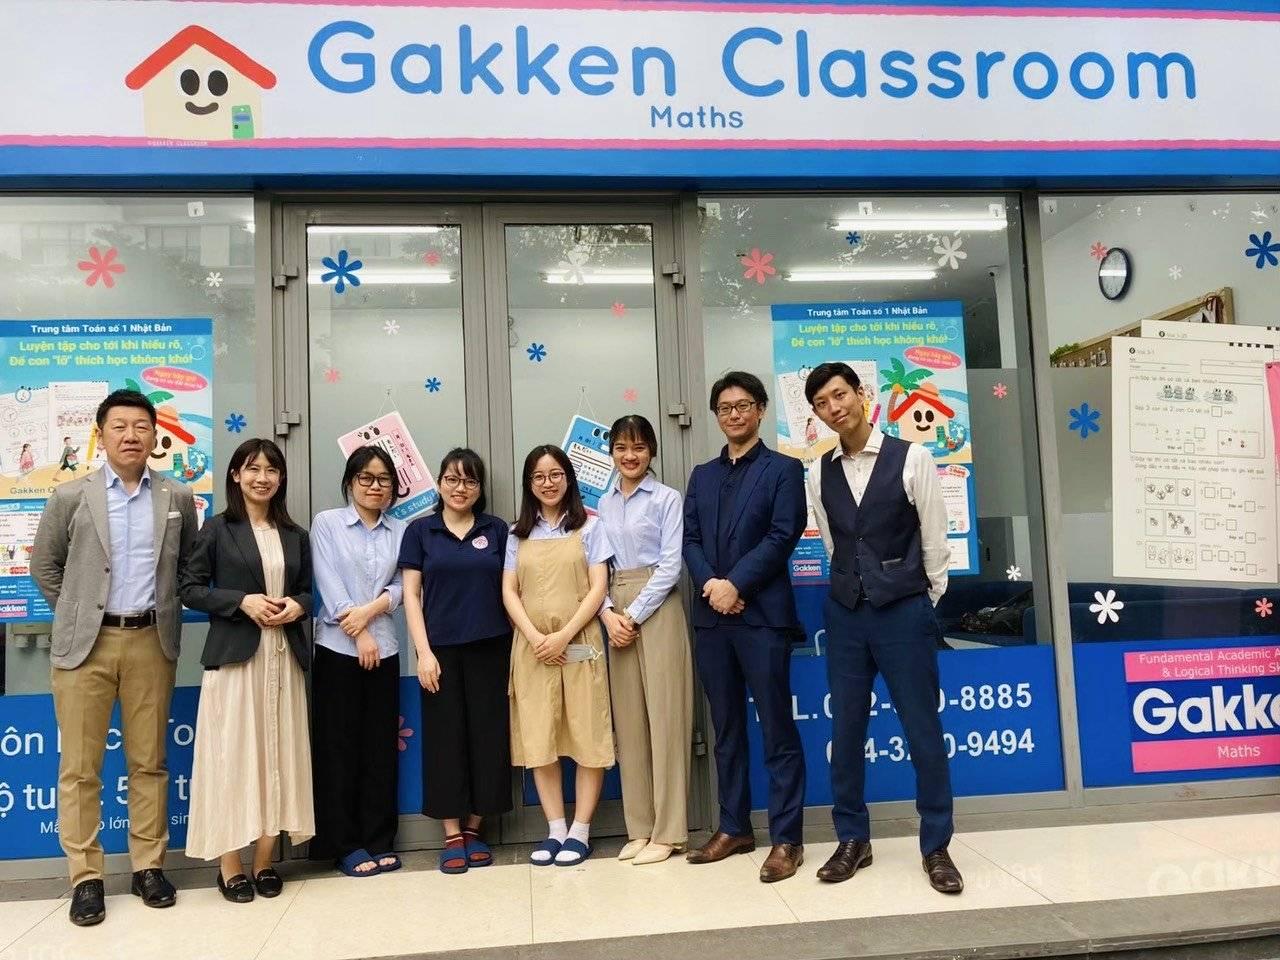 Trung Tâm Toán Số 1 Nhật Bản Gakken Classroom tuyển dụng - Tìm việc mới nhất, lương thưởng hấp dẫn.